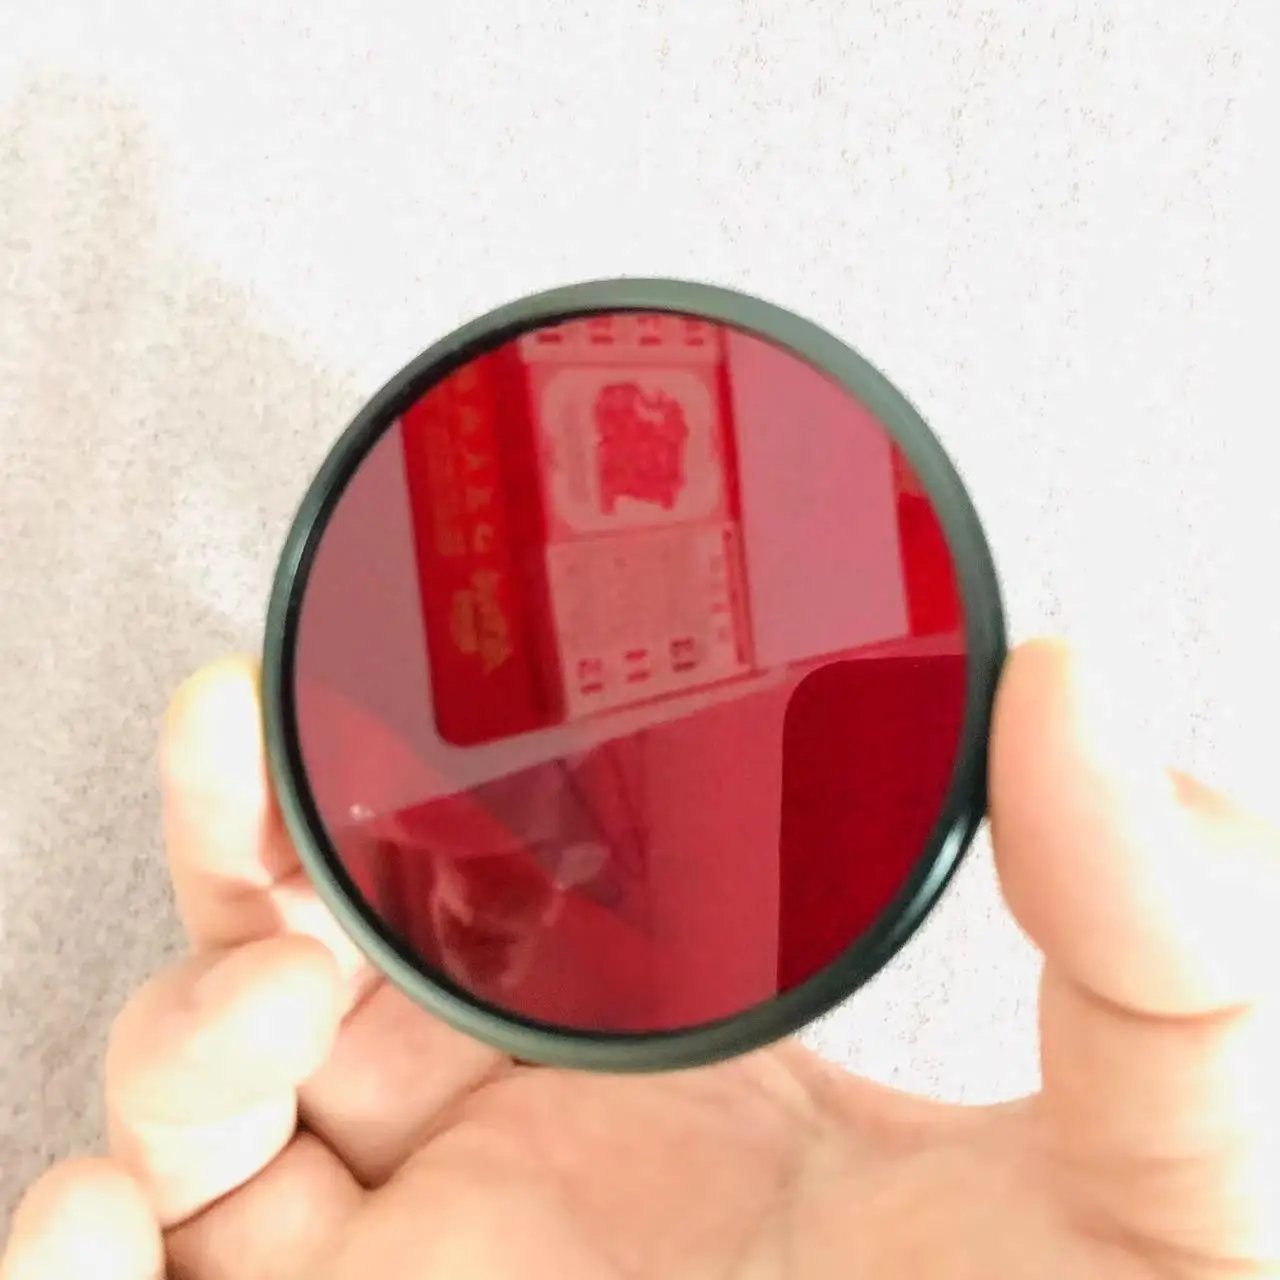 Filtro de paso infrarrojo HB630 para cámara, cristal rojo claro de 52mm, 630nm, para fotografía IR